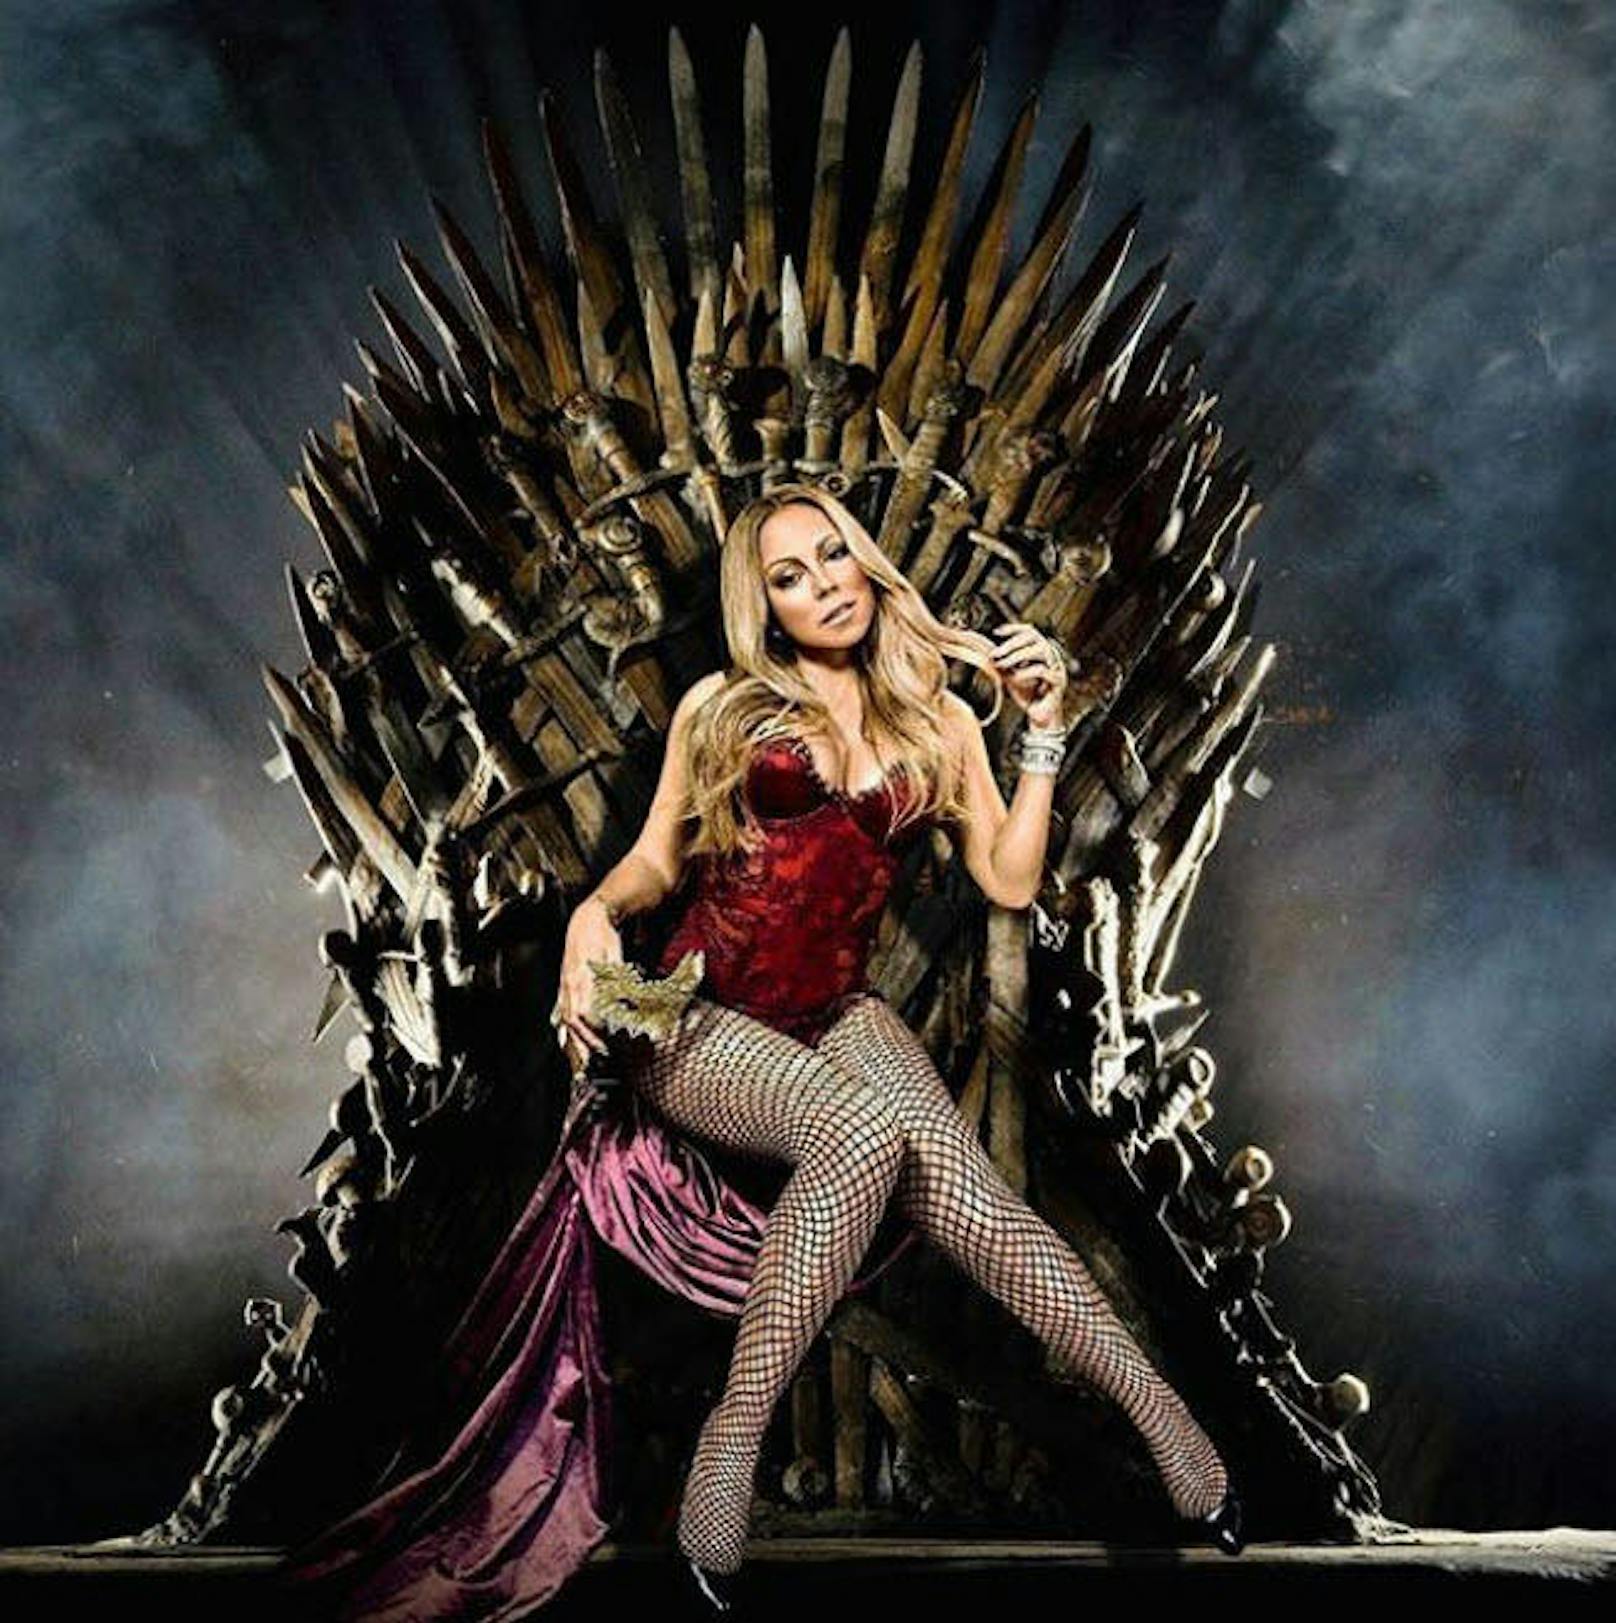 22.04.2019: Auch Mariah Carey hat das "Game of Thrones"-Fieber gepackt. Sie nimmt am Eisernen Thron Platz und wird von ihren Fans mit Fantasy-Adelstiteln überhäuft.